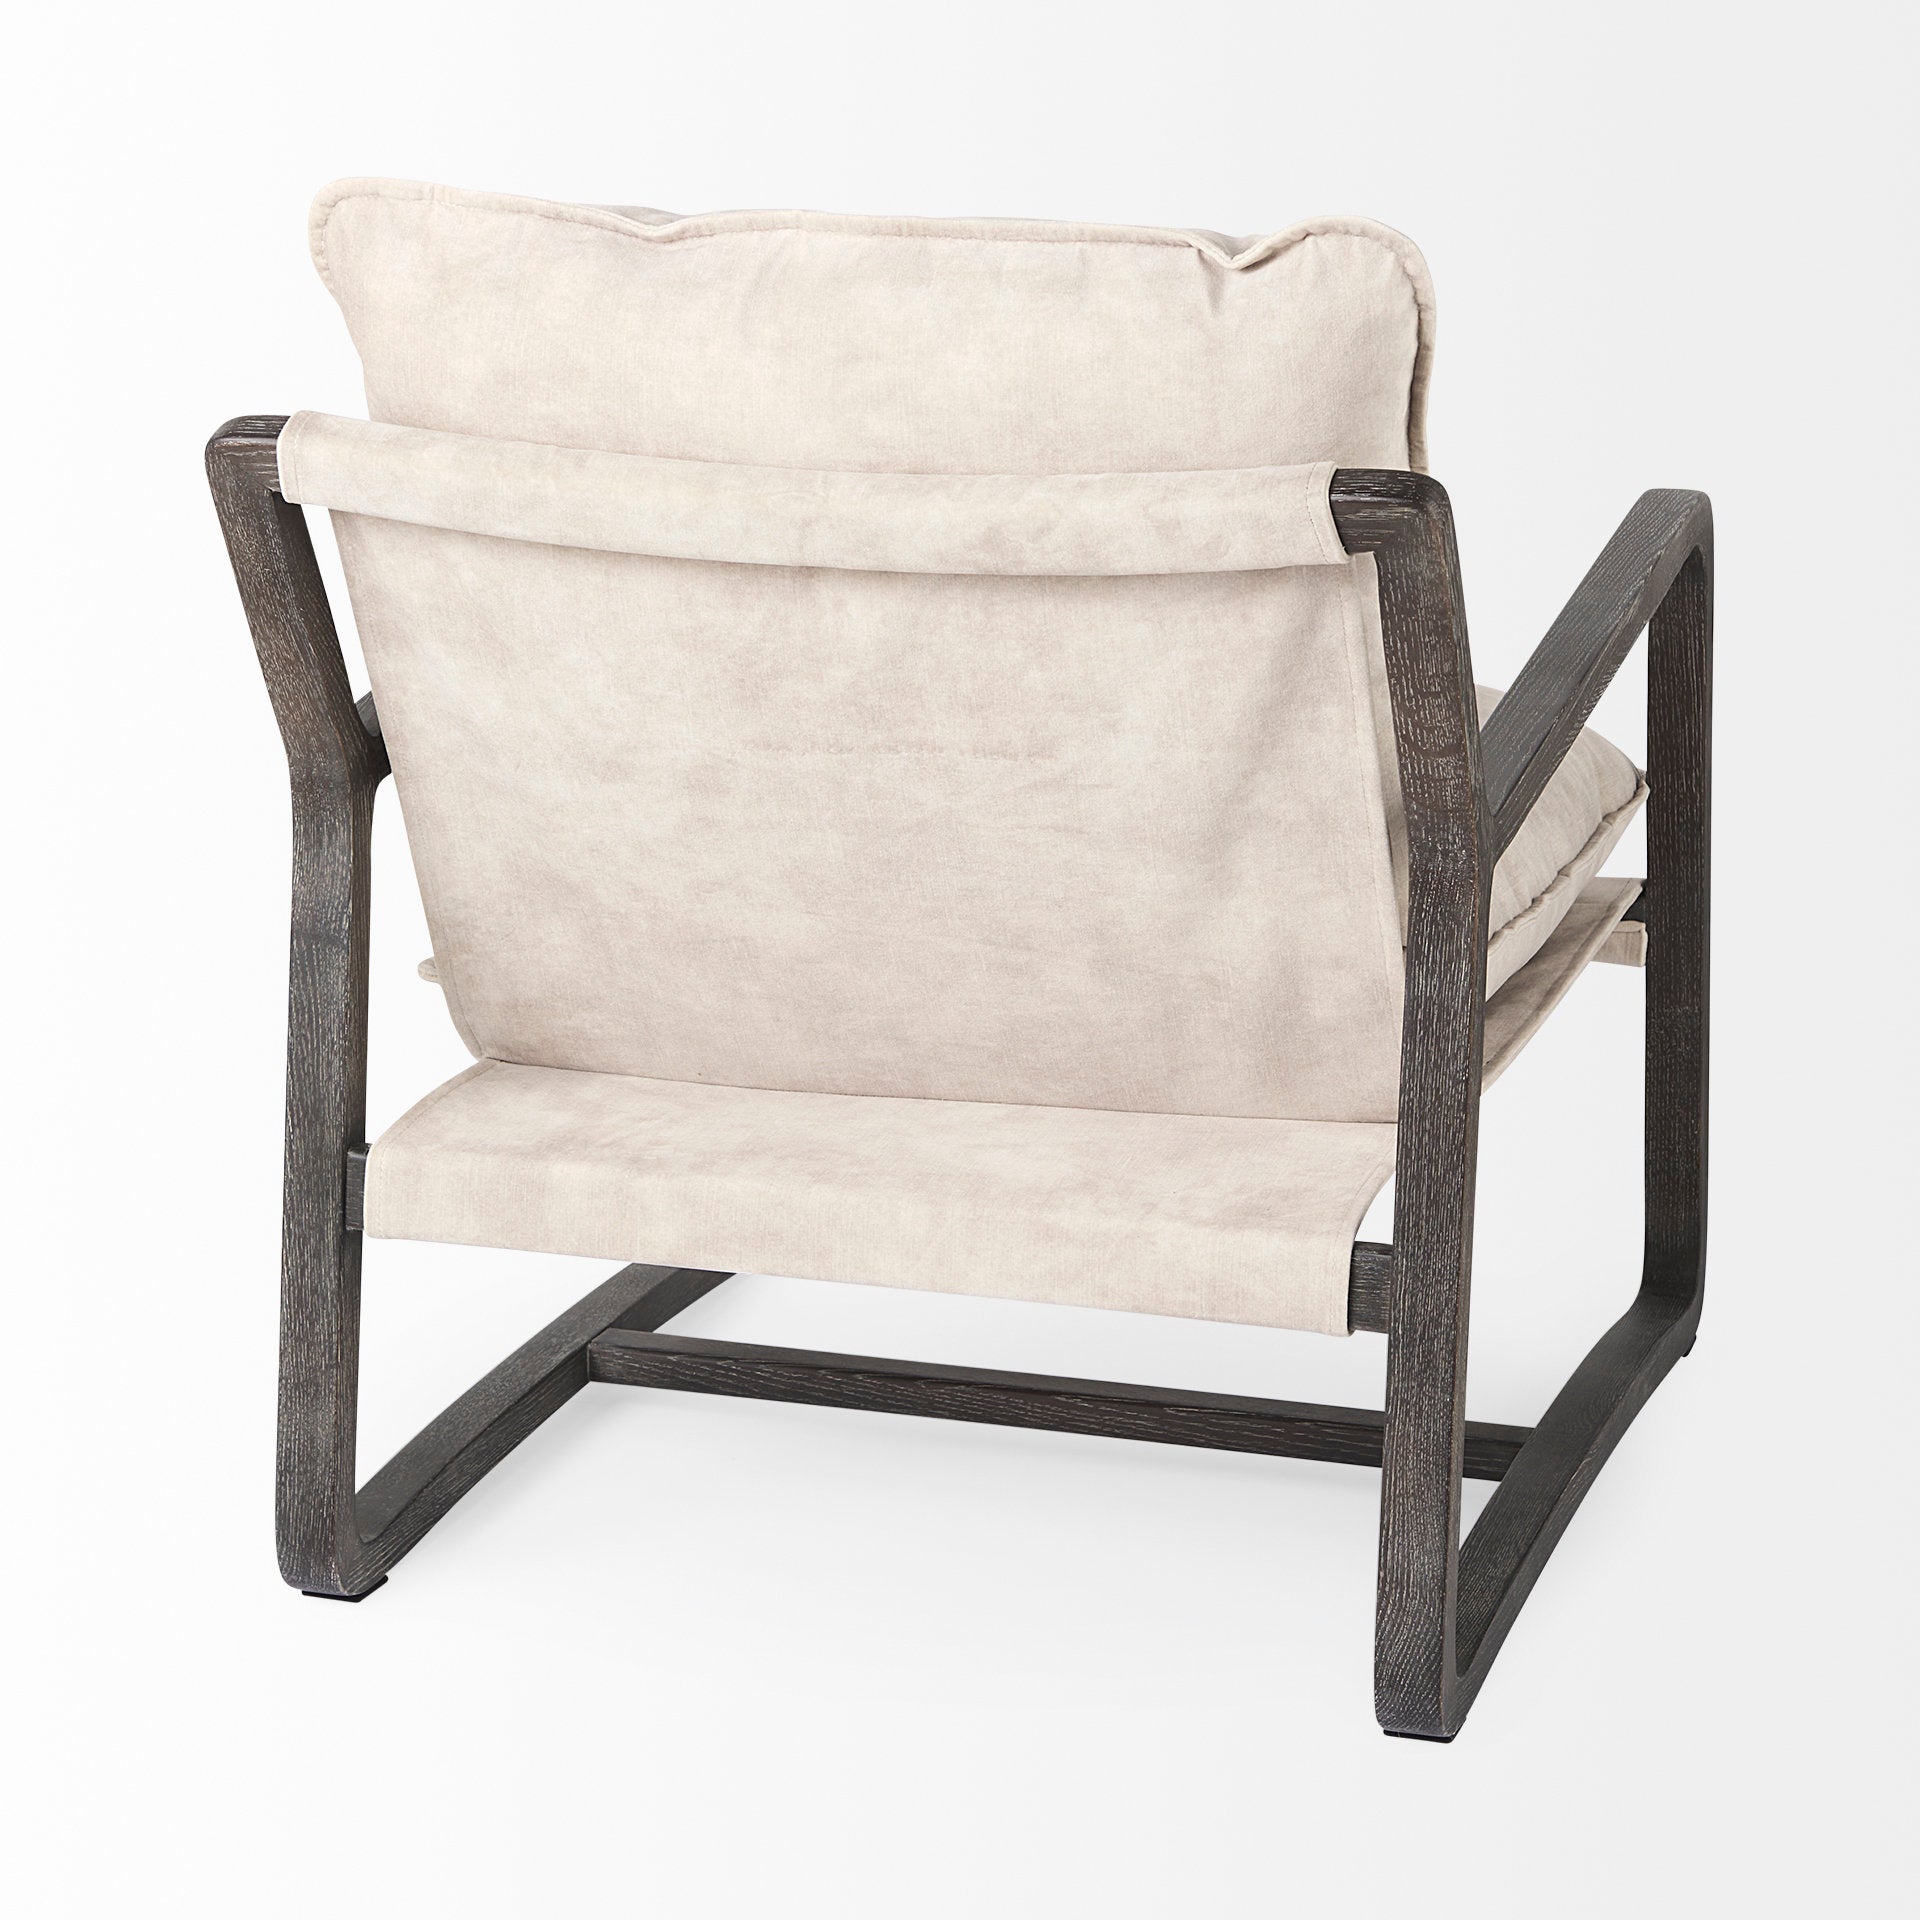 Brayden Accent Chair - Cream & Dark Brown Wood